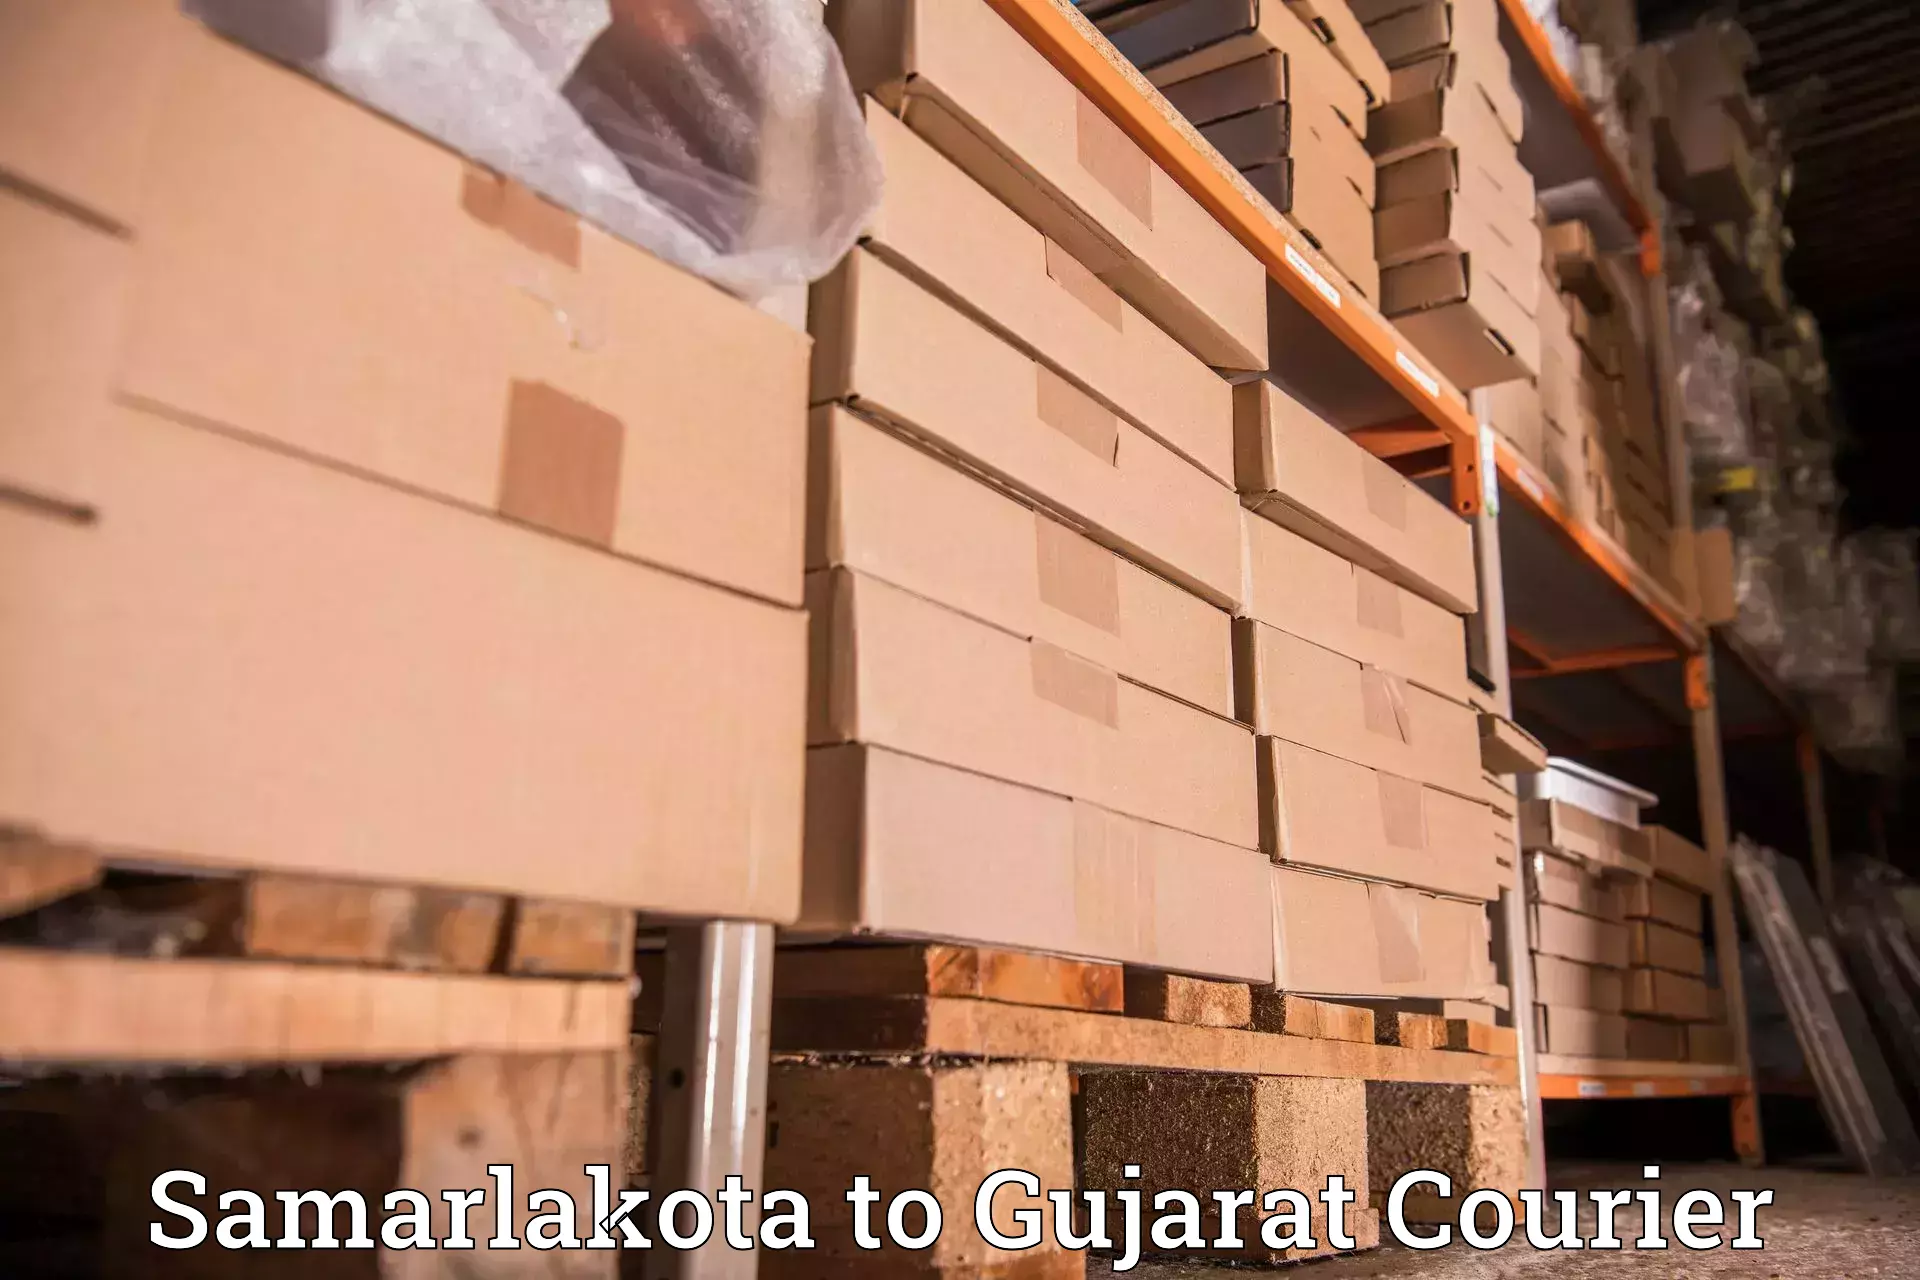 24/7 courier service in Samarlakota to Patan Gujarat